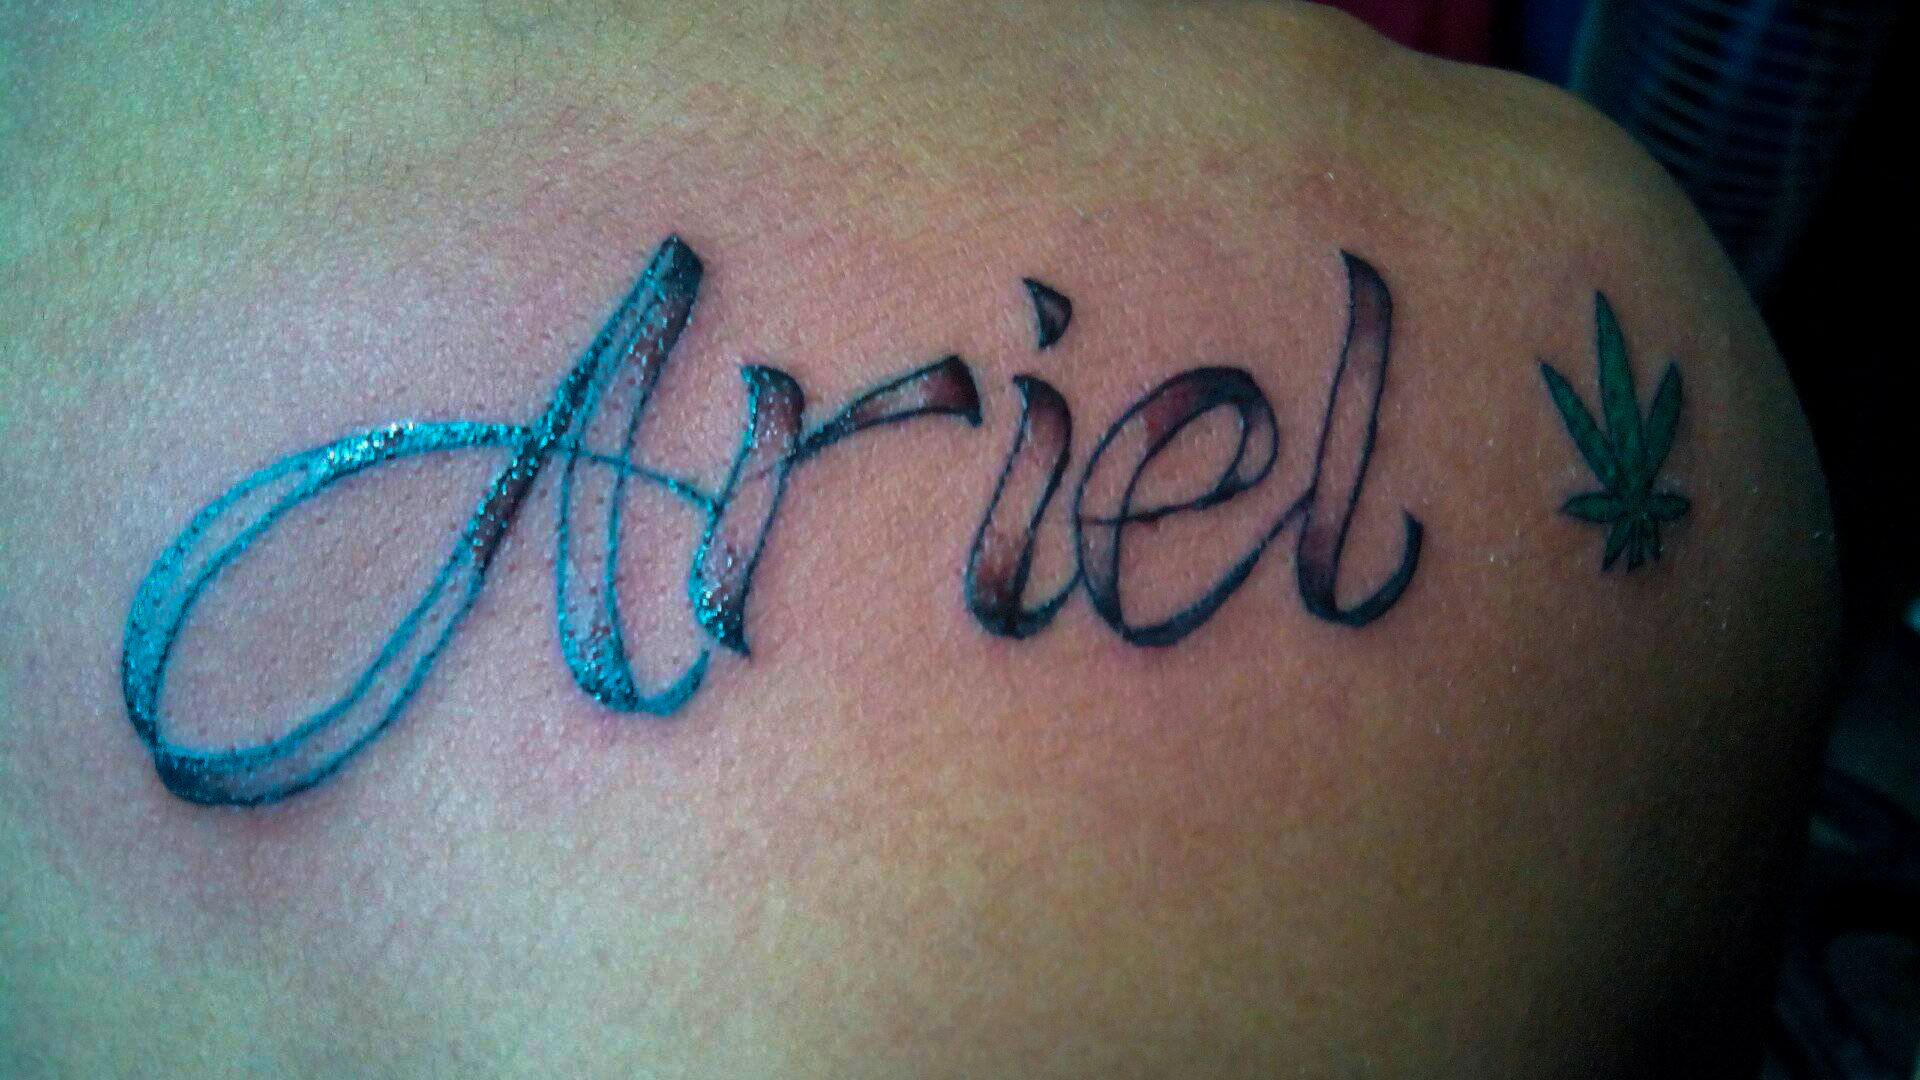 ariel name tattoo